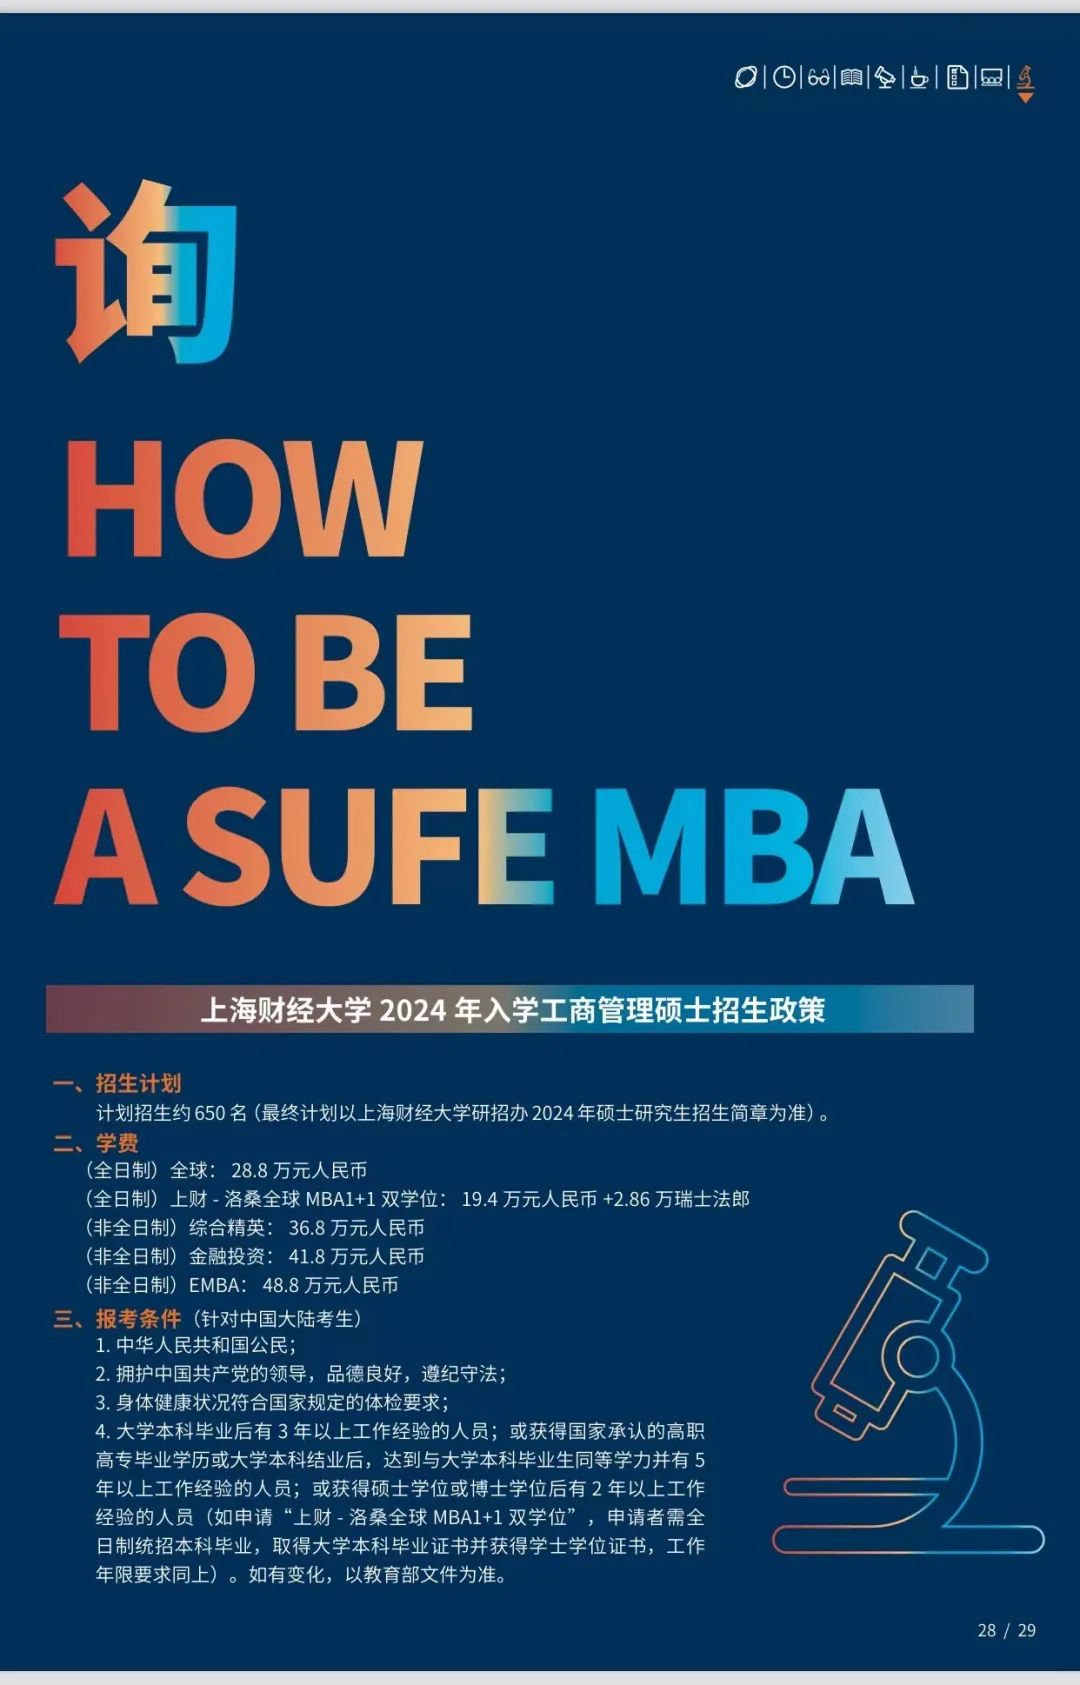 上海财经大学2024年入学MBA/EMBA提前面试政策